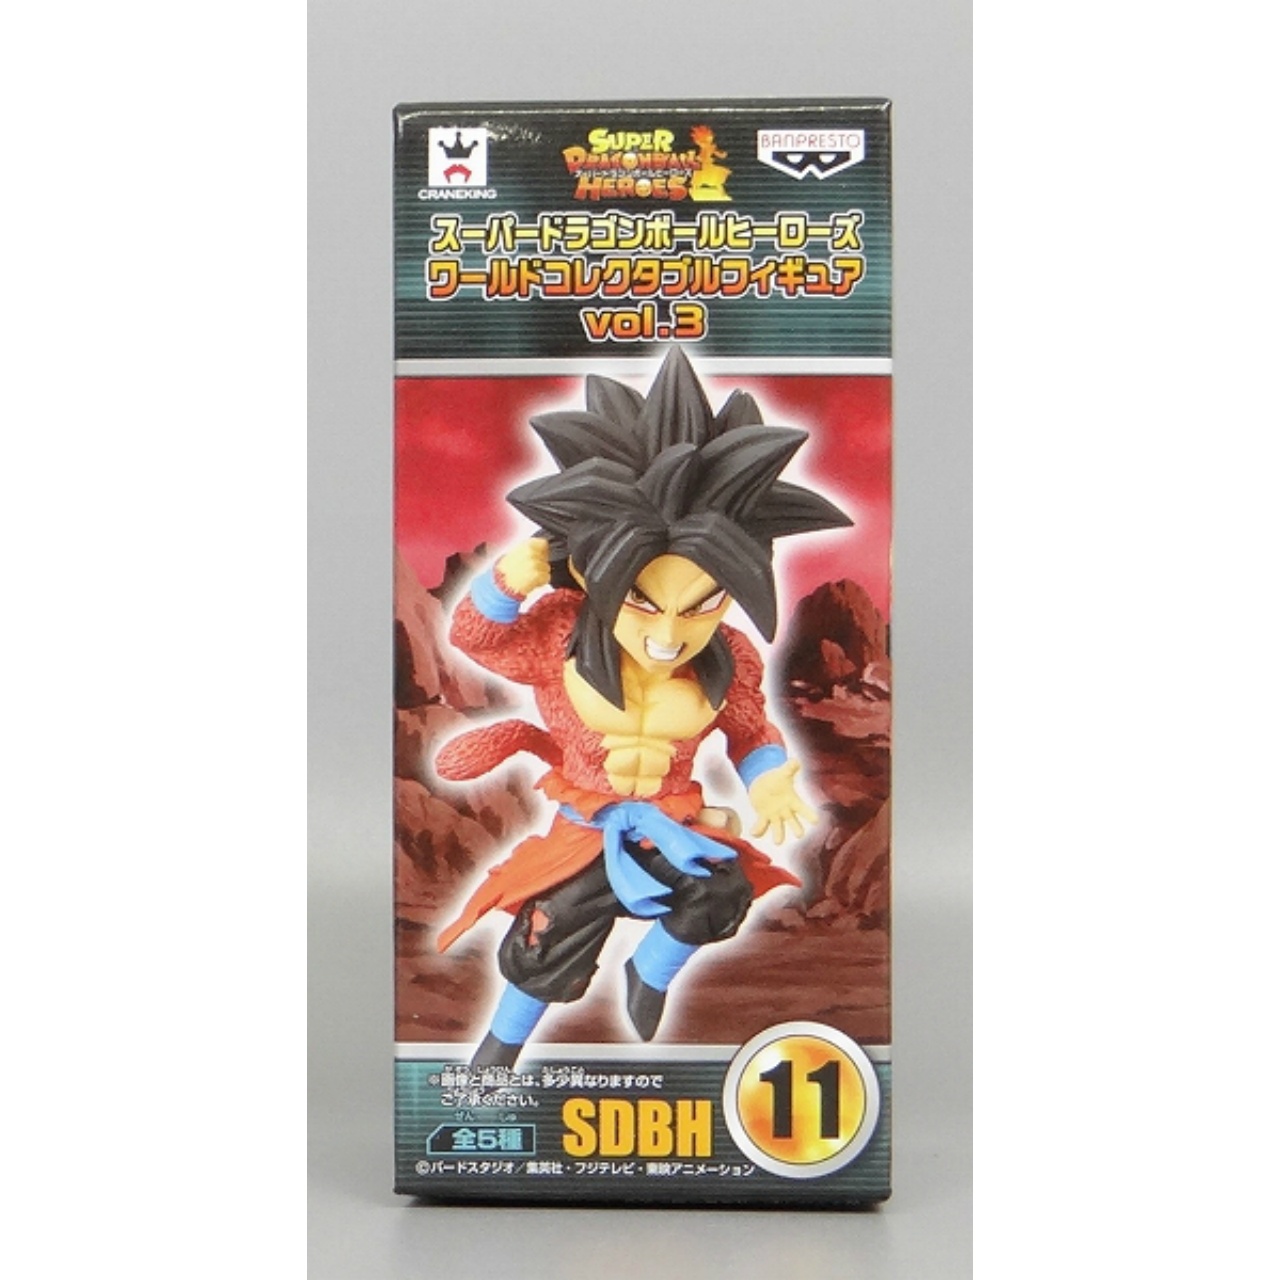 Super Dragon Ball Heroes World Collectable Figure Vol.3 SDBH11 Super Saiyan 4 Son Gokou:Xeno